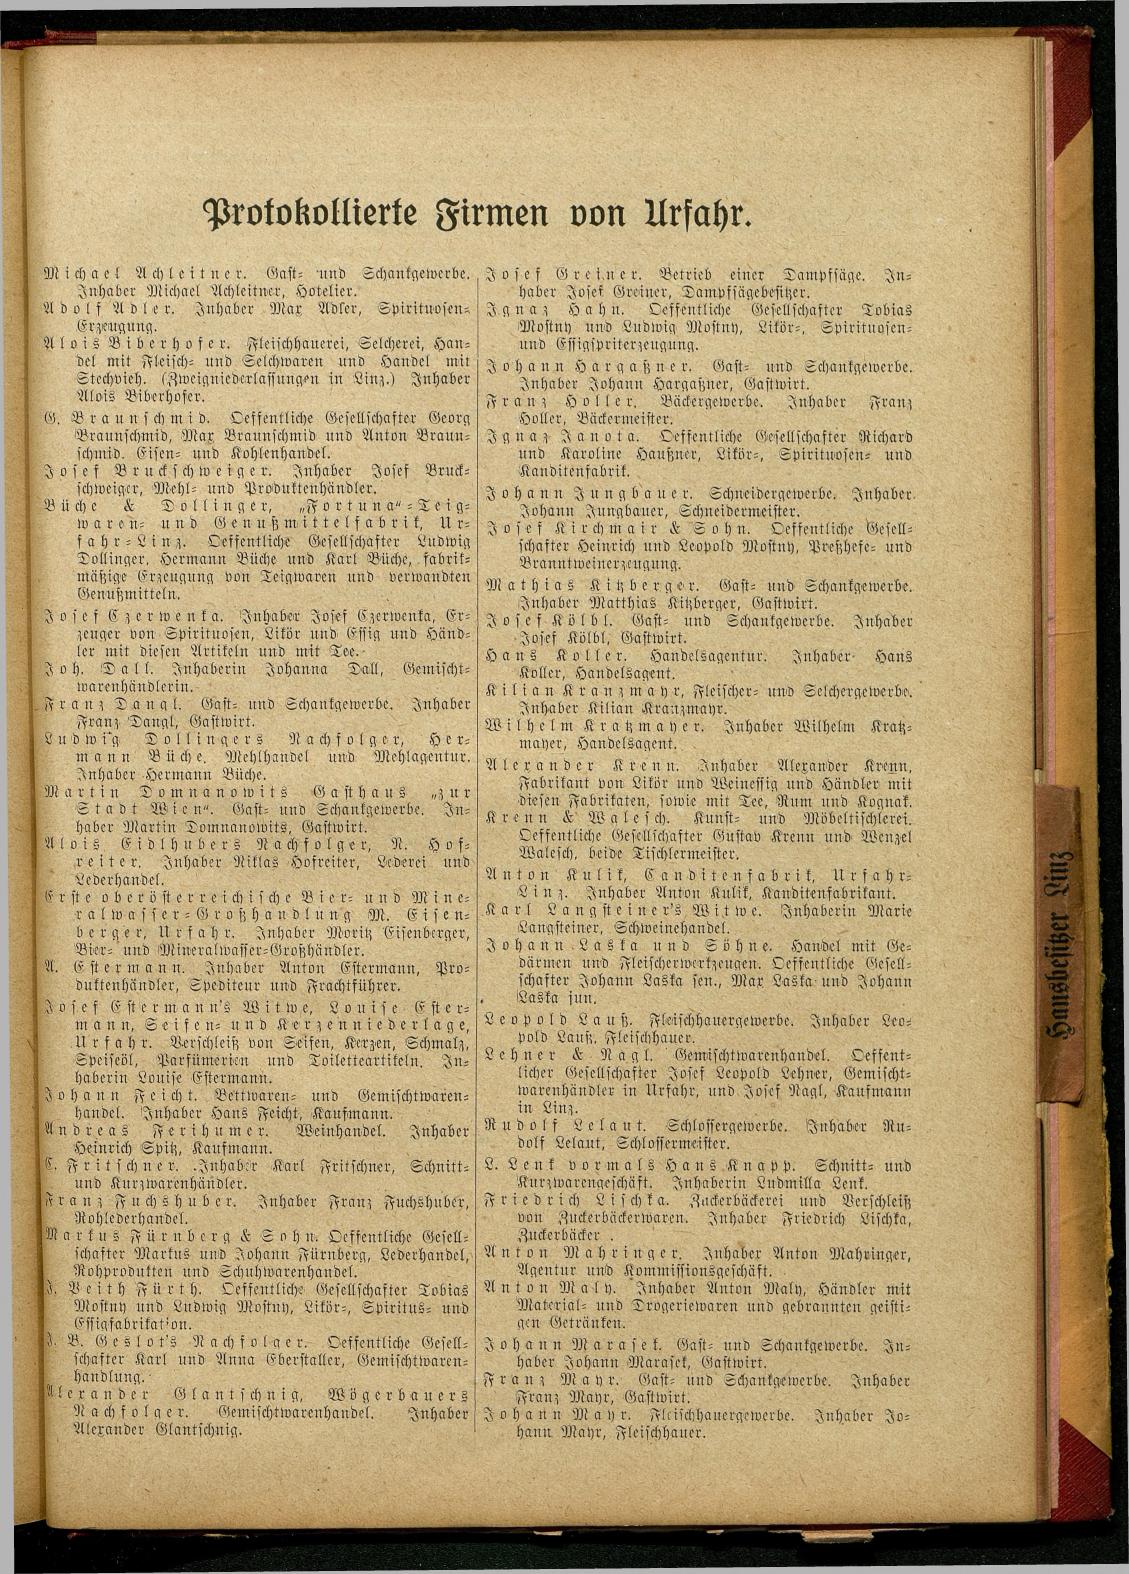 Allgemeines Wohnungs-, Handels- und Gewerbe-Adreßbuch der Städte Linz und Urfahr. Linz 1914. - Page 289